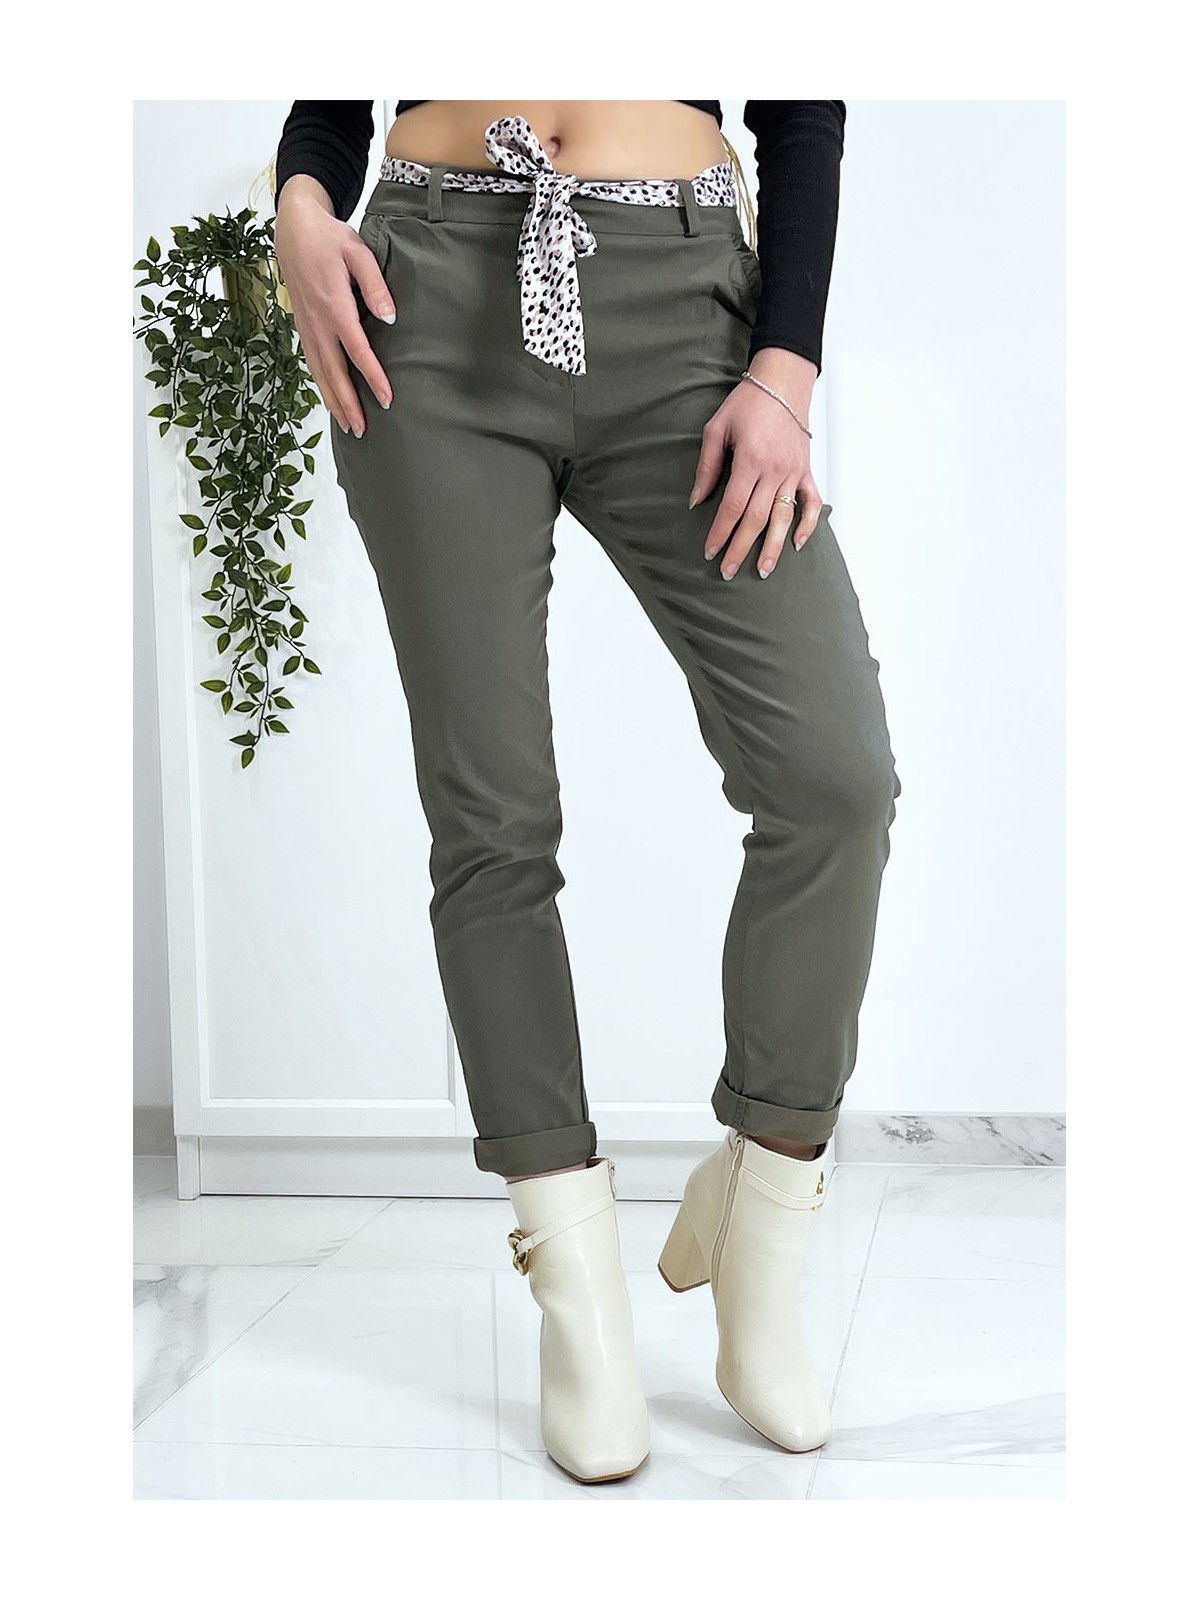 Pantalon strech kaki avec poches froufrou et ceinture - 5